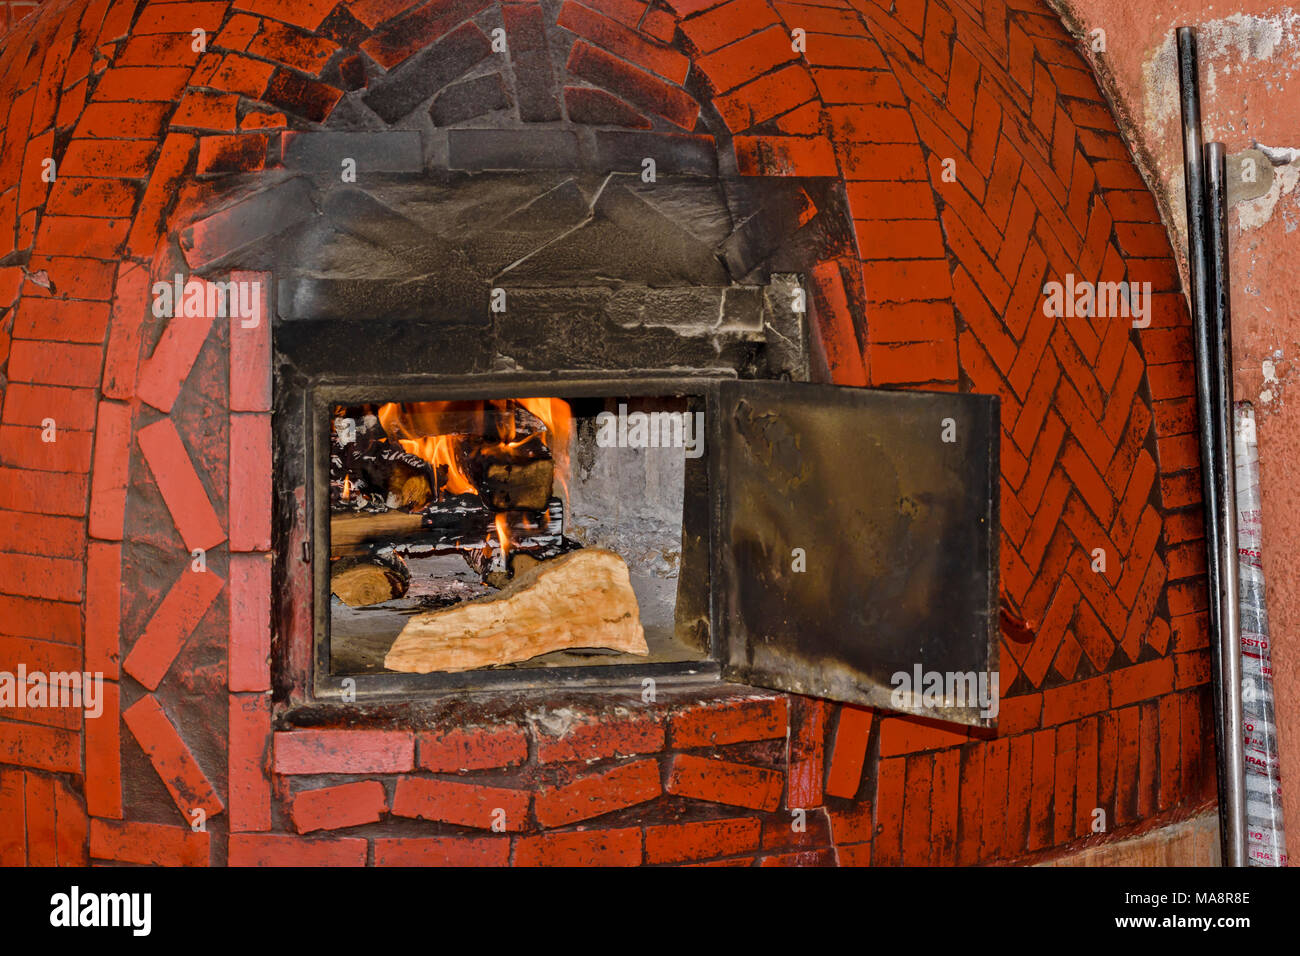 Il Marocco Marrakech Piazza Jemaa El Fna a fuoco di legno all'interno di un forno a legna Foto Stock